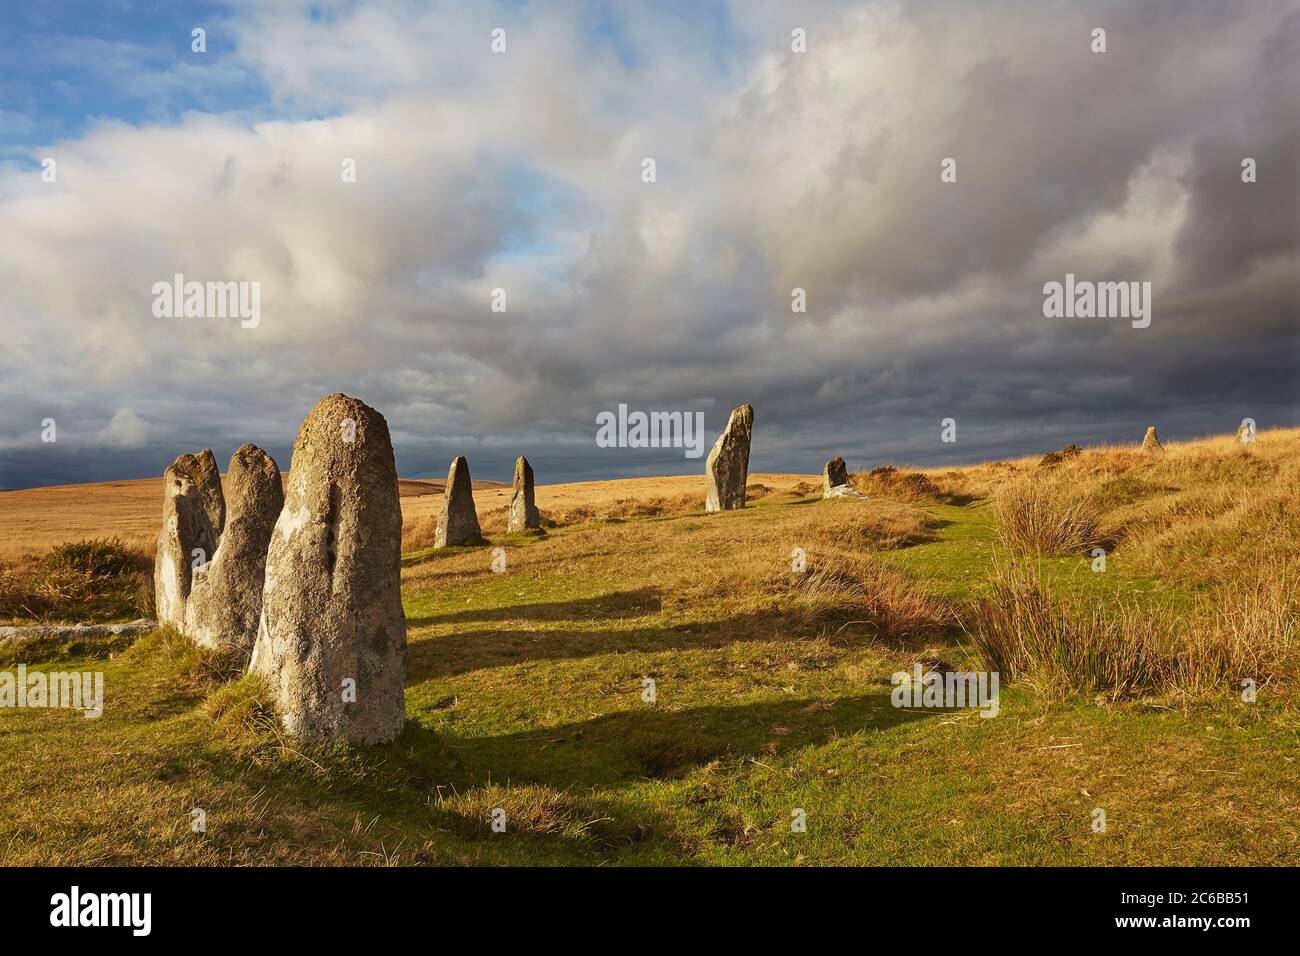 Pierres anciennes préhistoriques sur pied dans un cercle de pierre, Scorhill Stone Circle, parc national de Dartmoor, Devon, Angleterre, Royaume-Uni, Europe Banque D'Images